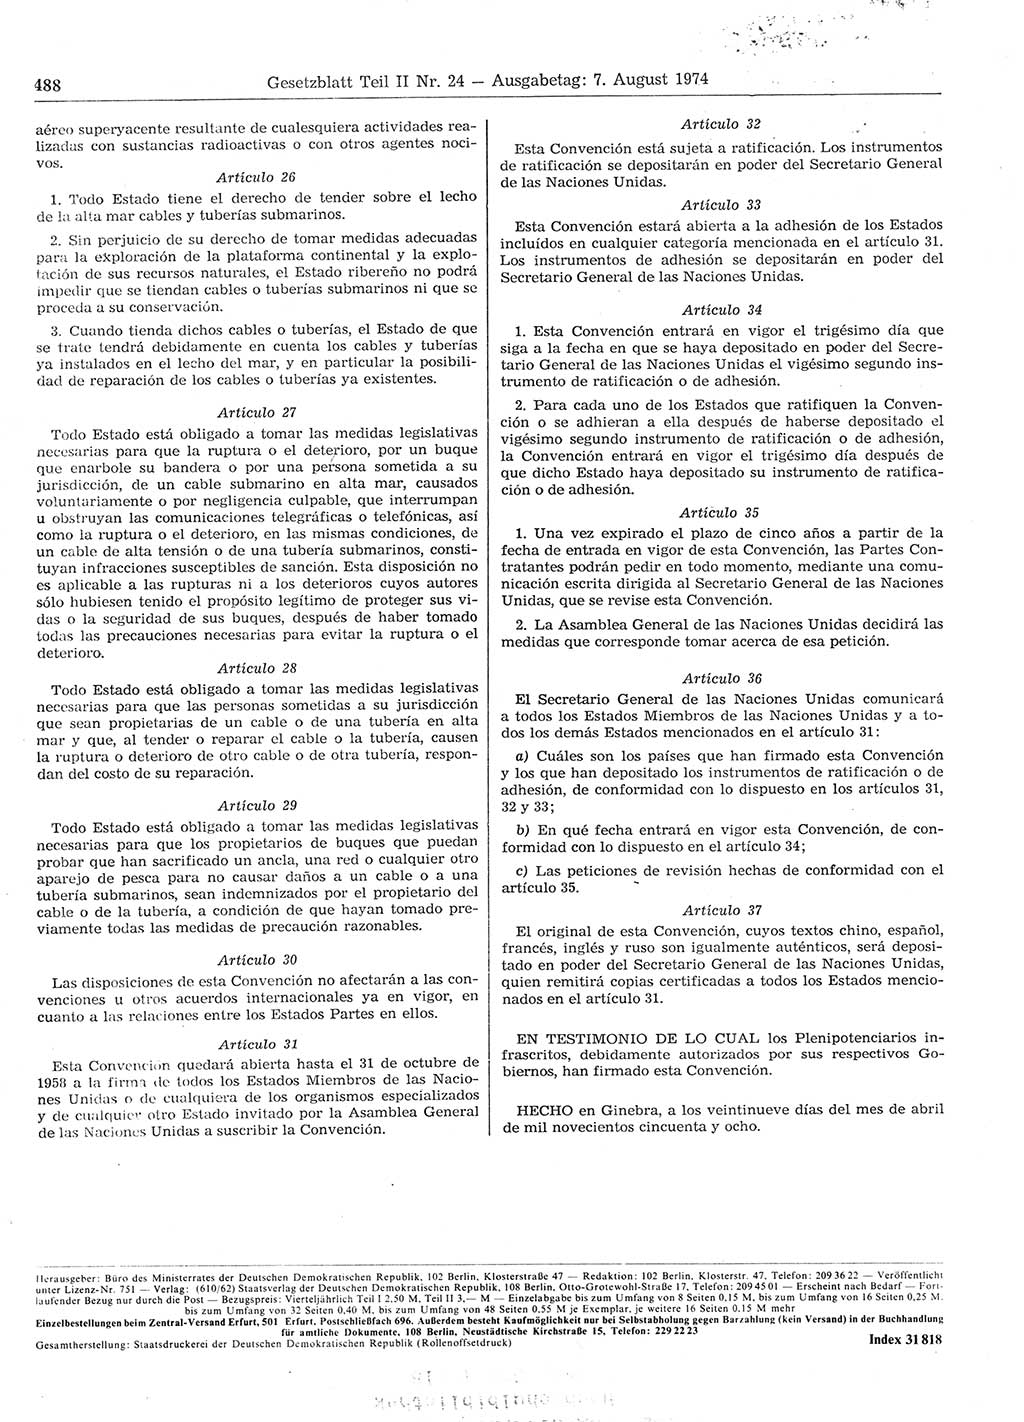 Gesetzblatt (GBl.) der Deutschen Demokratischen Republik (DDR) Teil ⅠⅠ 1974, Seite 488 (GBl. DDR ⅠⅠ 1974, S. 488)